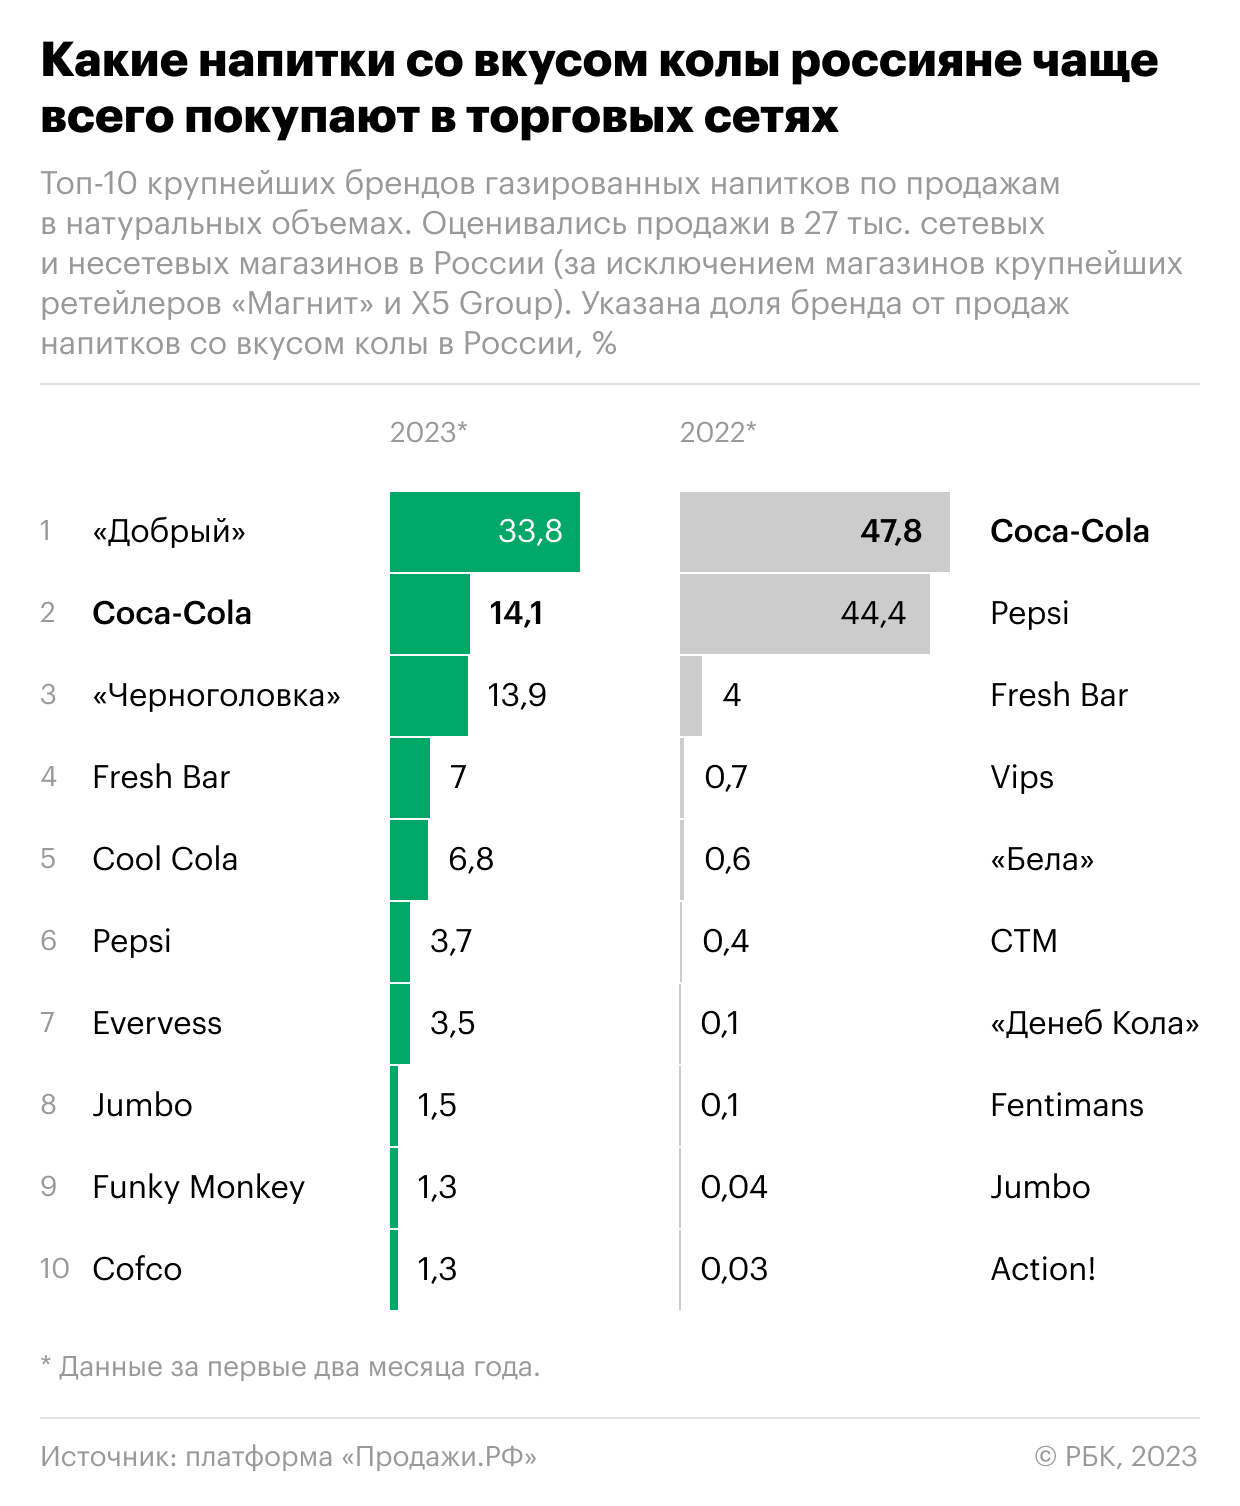 A Coca-Cola továbbra is vezető szerepet tölt be az üdítőitalok értékesítésében Oroszországban